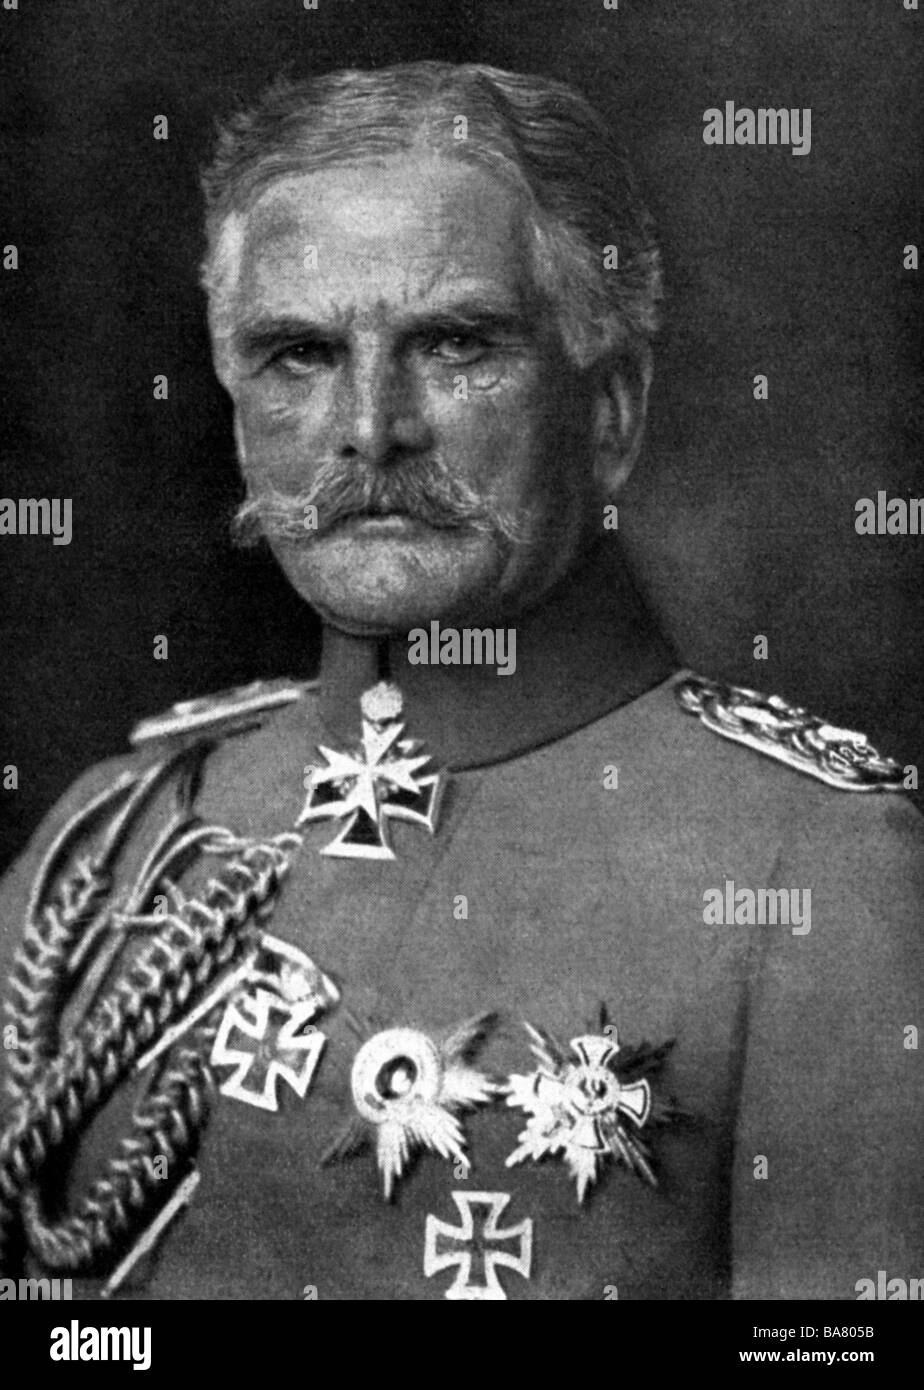 Mackensen, August von, 6.12. 1849 - 8.11.1945, German general, portrait, 1915, , Stock Photo